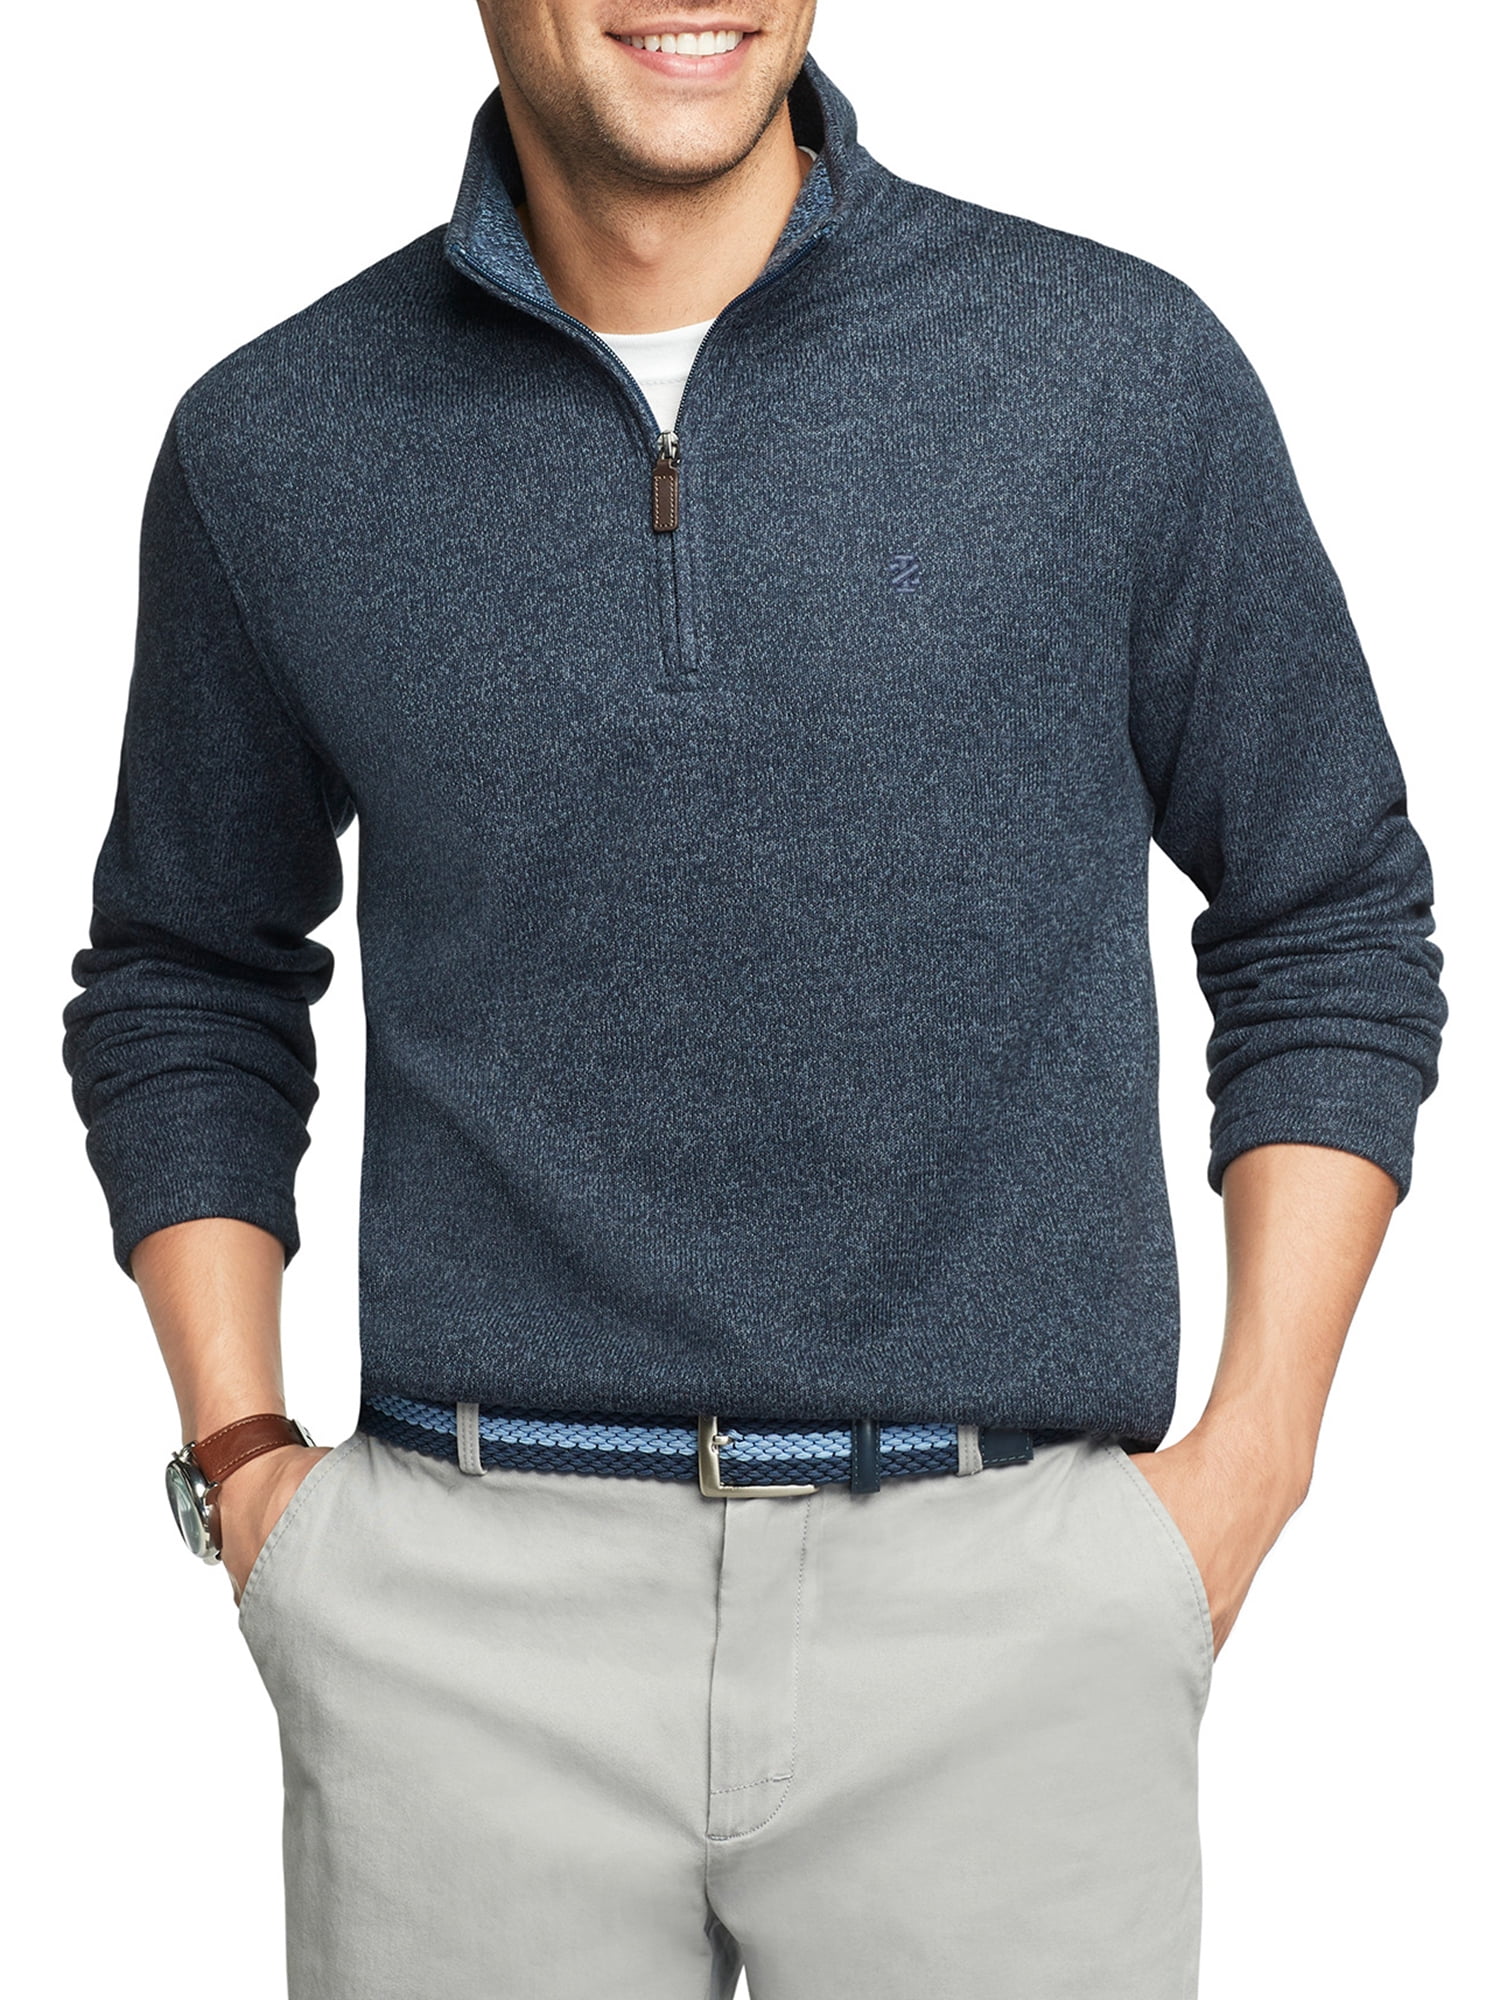 IZOD Men's Sweater Fleece Quarter Zip - Walmart.com